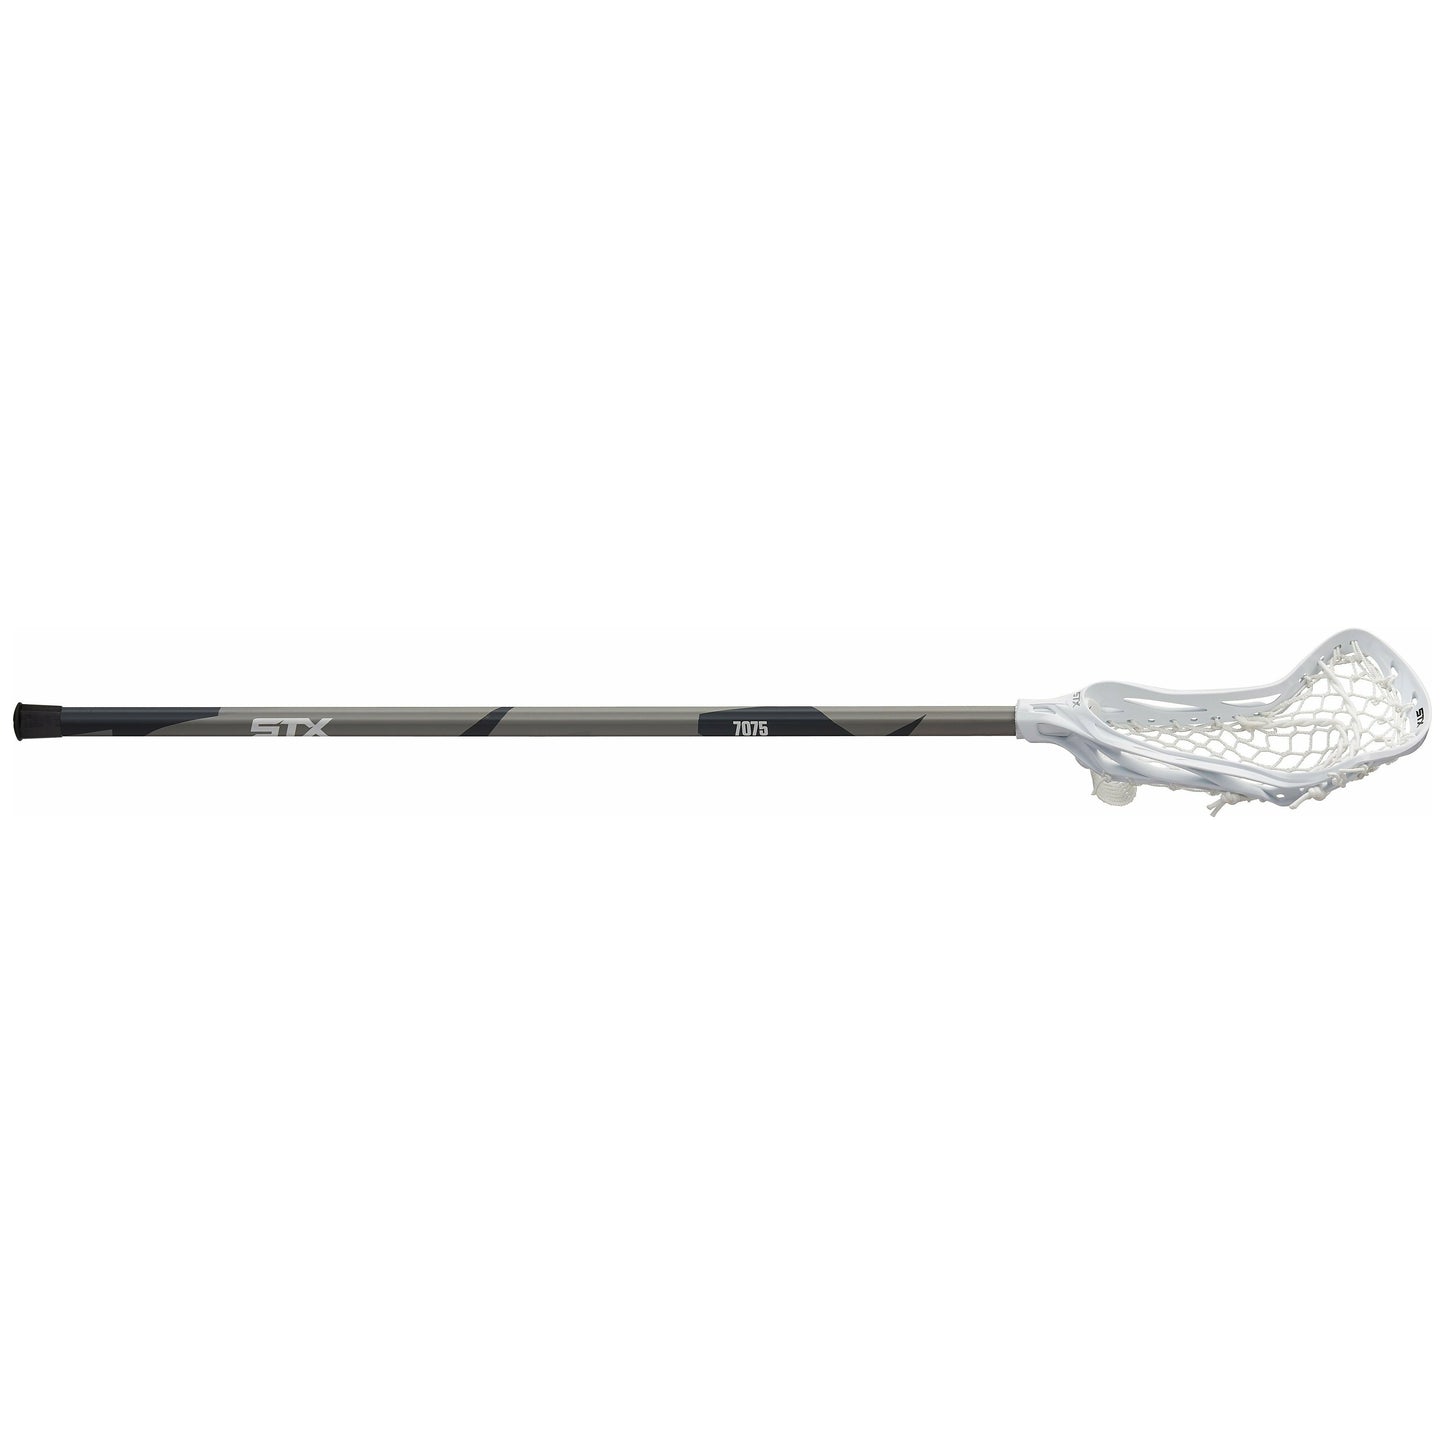 STX Exult 400 Complete Women's Lacrosse Stick